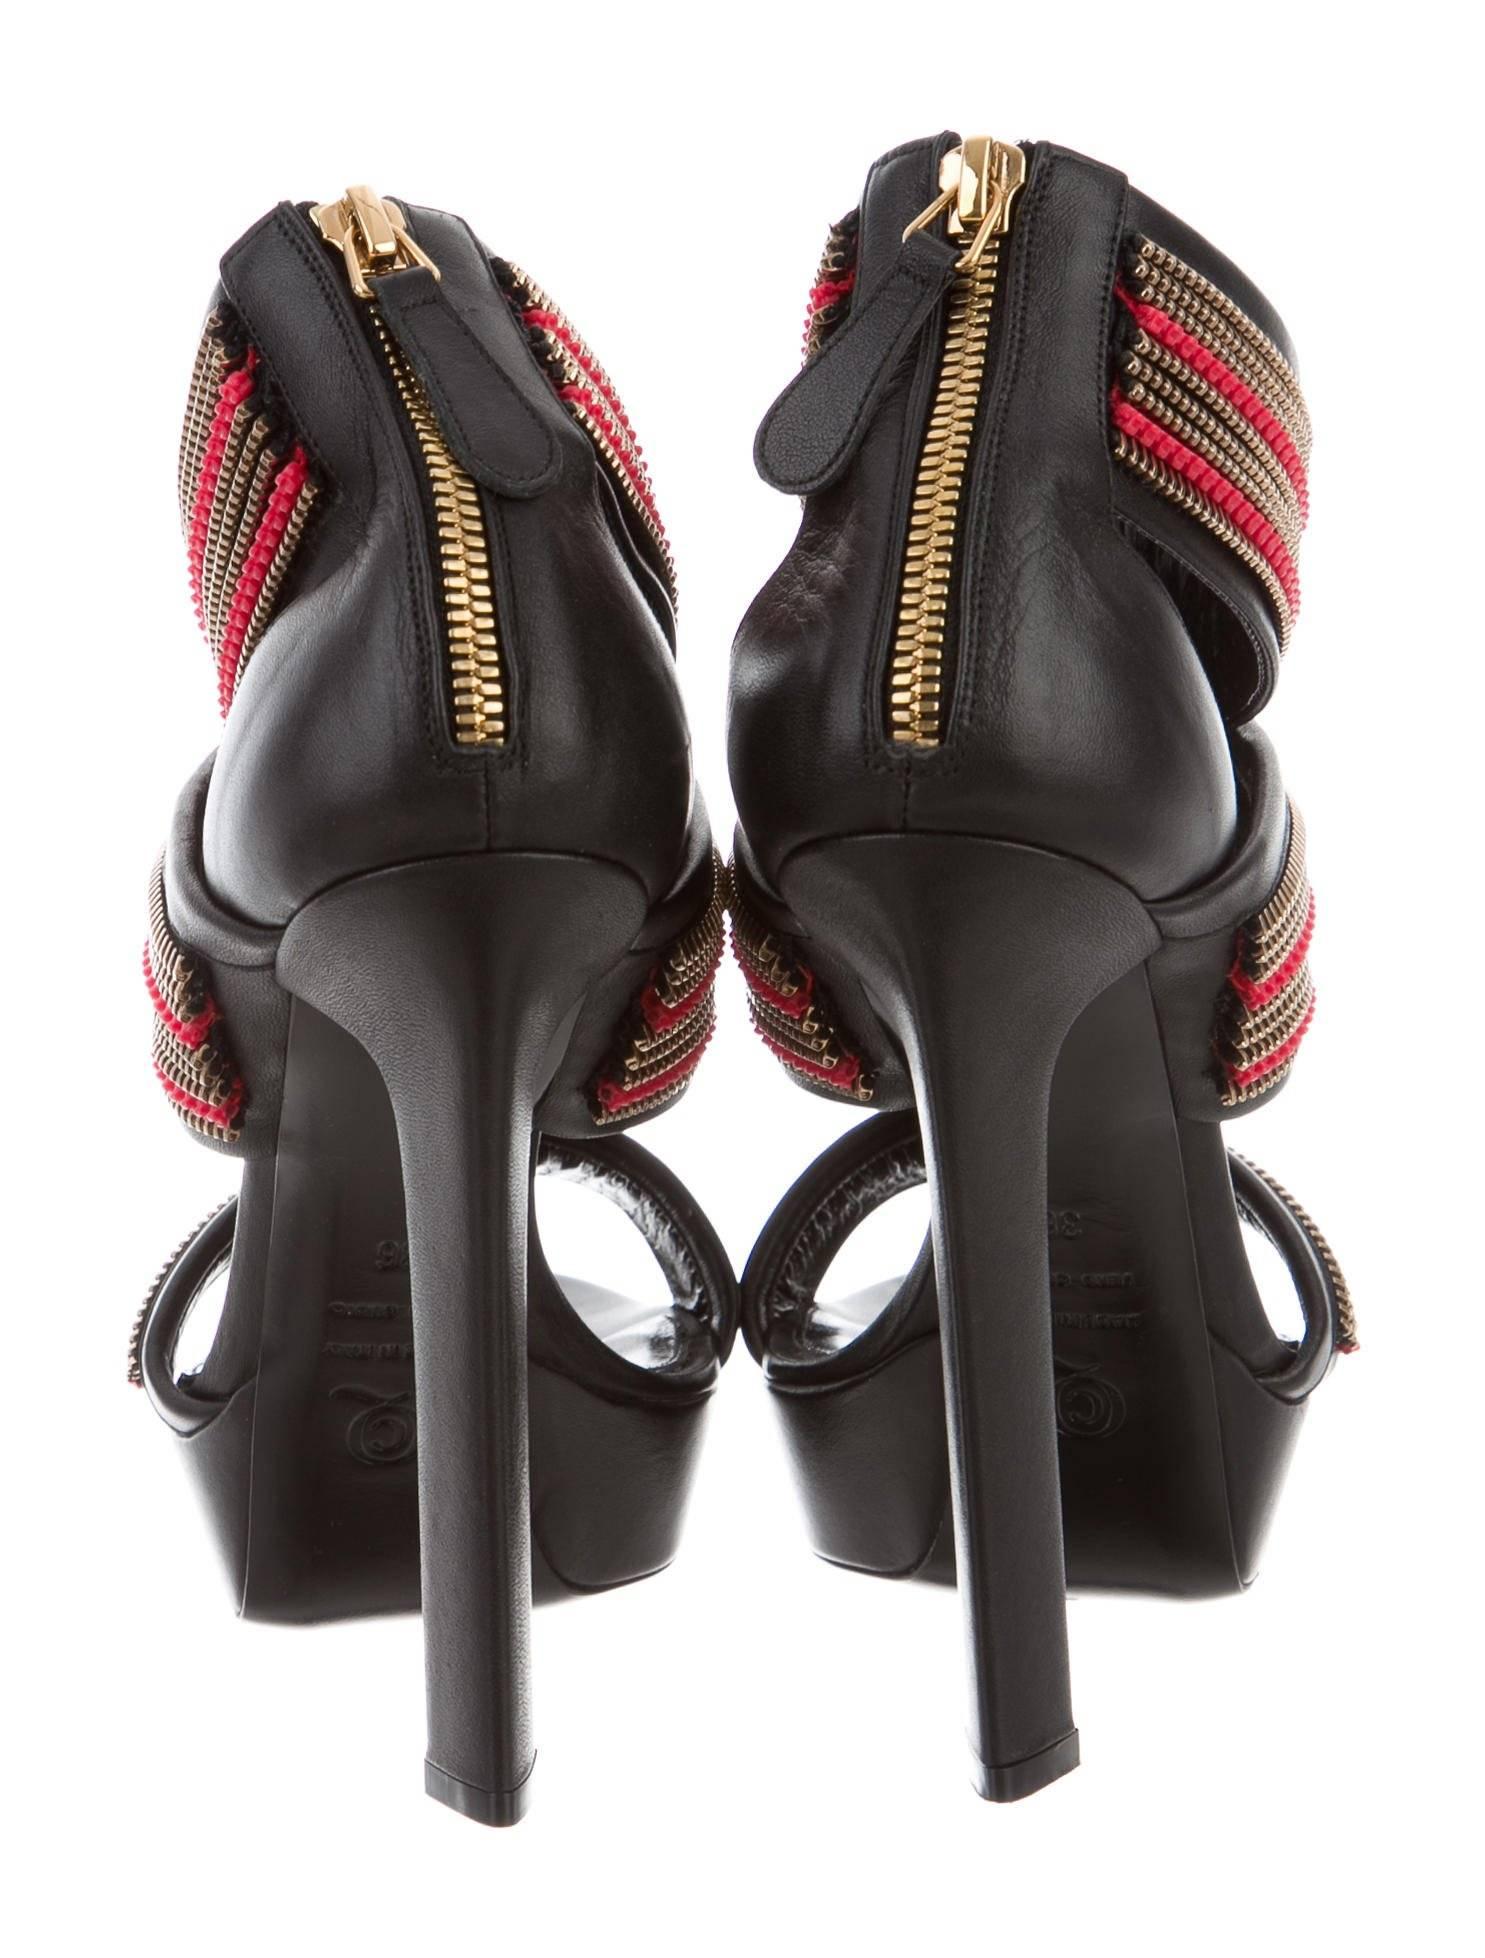 Women's Alexander McQueen New Black Leather Coral Bead Gold Metal Sandals Heels in Box